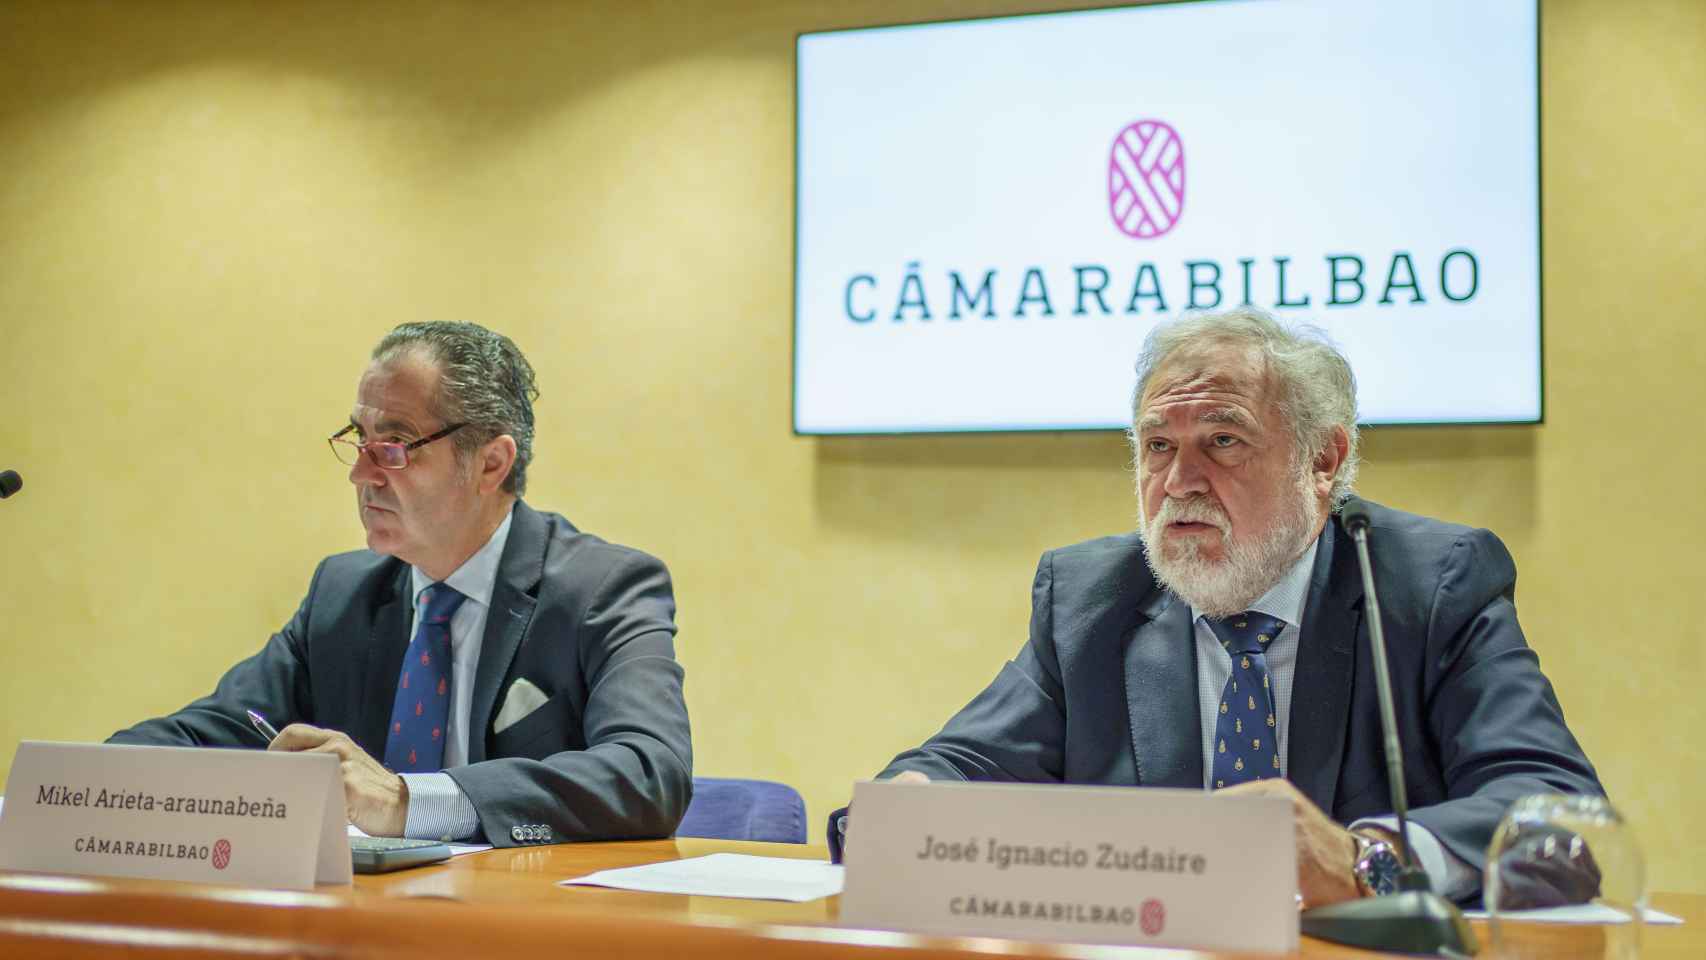 José Ignacio Zudaire, presidente de la Cámara de Comercio de Bilbao, junto a Mikel Arieta-araunbeña, secretario general.